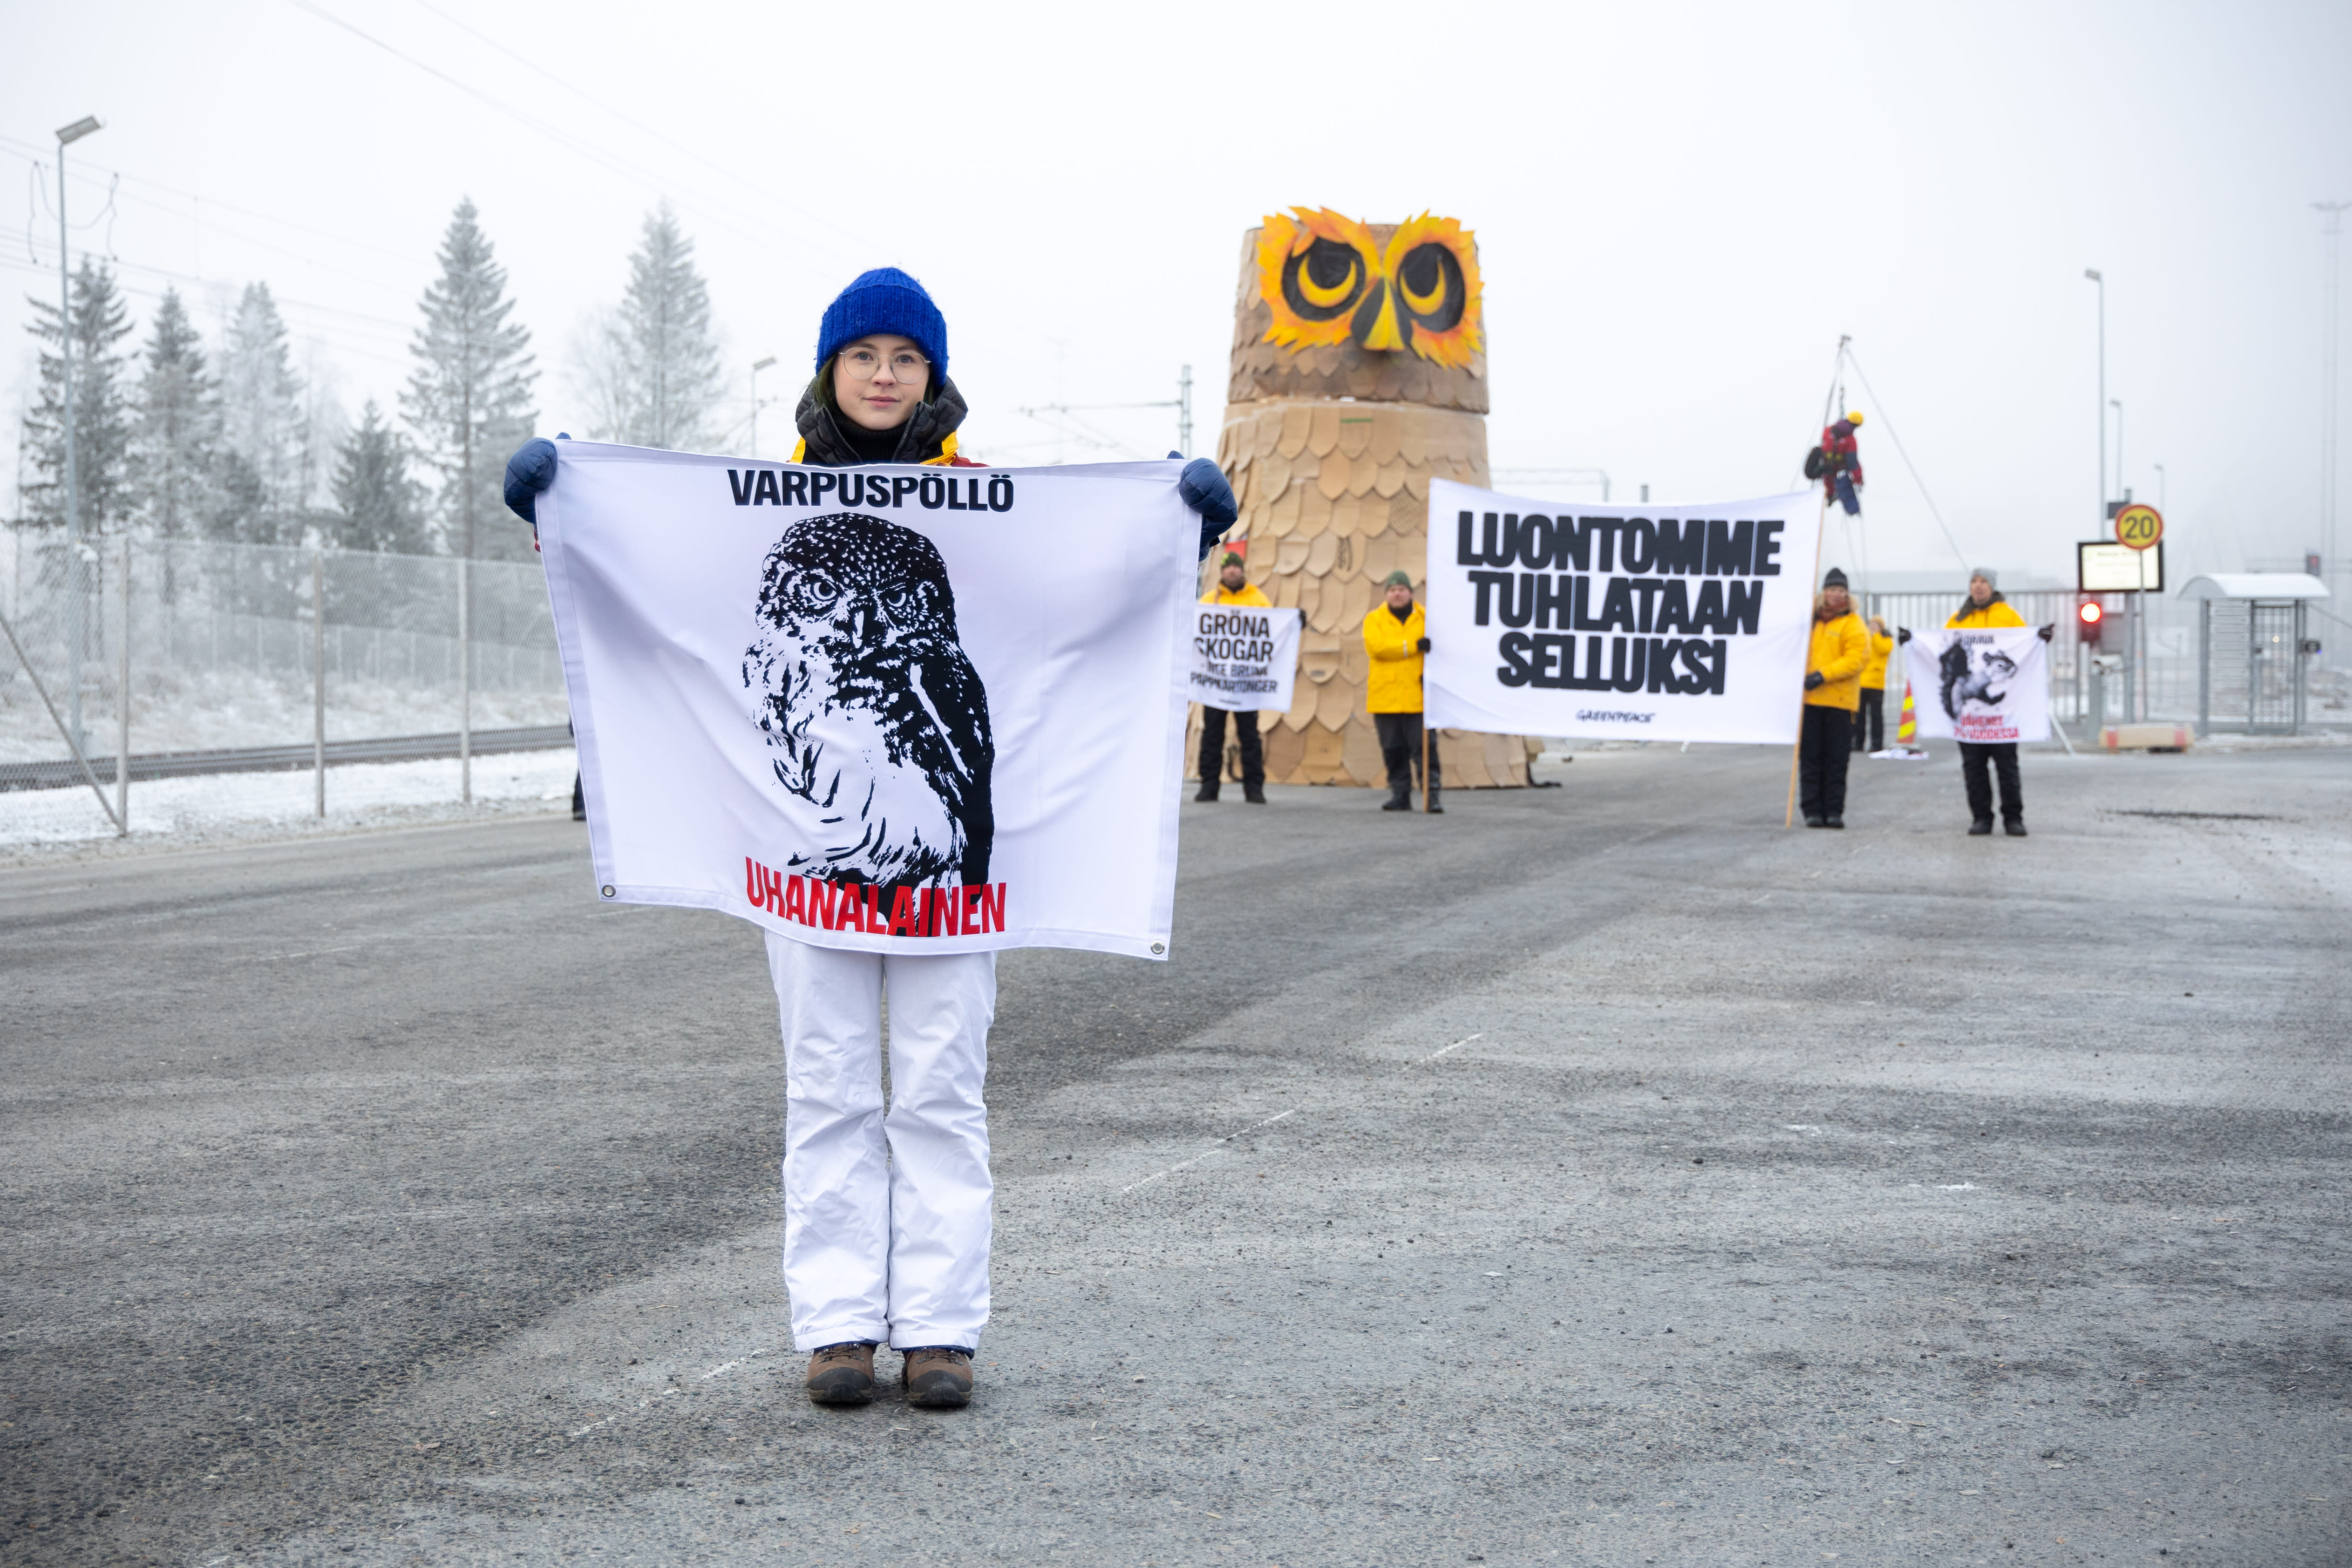 Die Polizei hat im Zusammenhang mit der Demonstration in der Zellstofffabrik in Lappland 29 Klimaaktivisten festgenommen